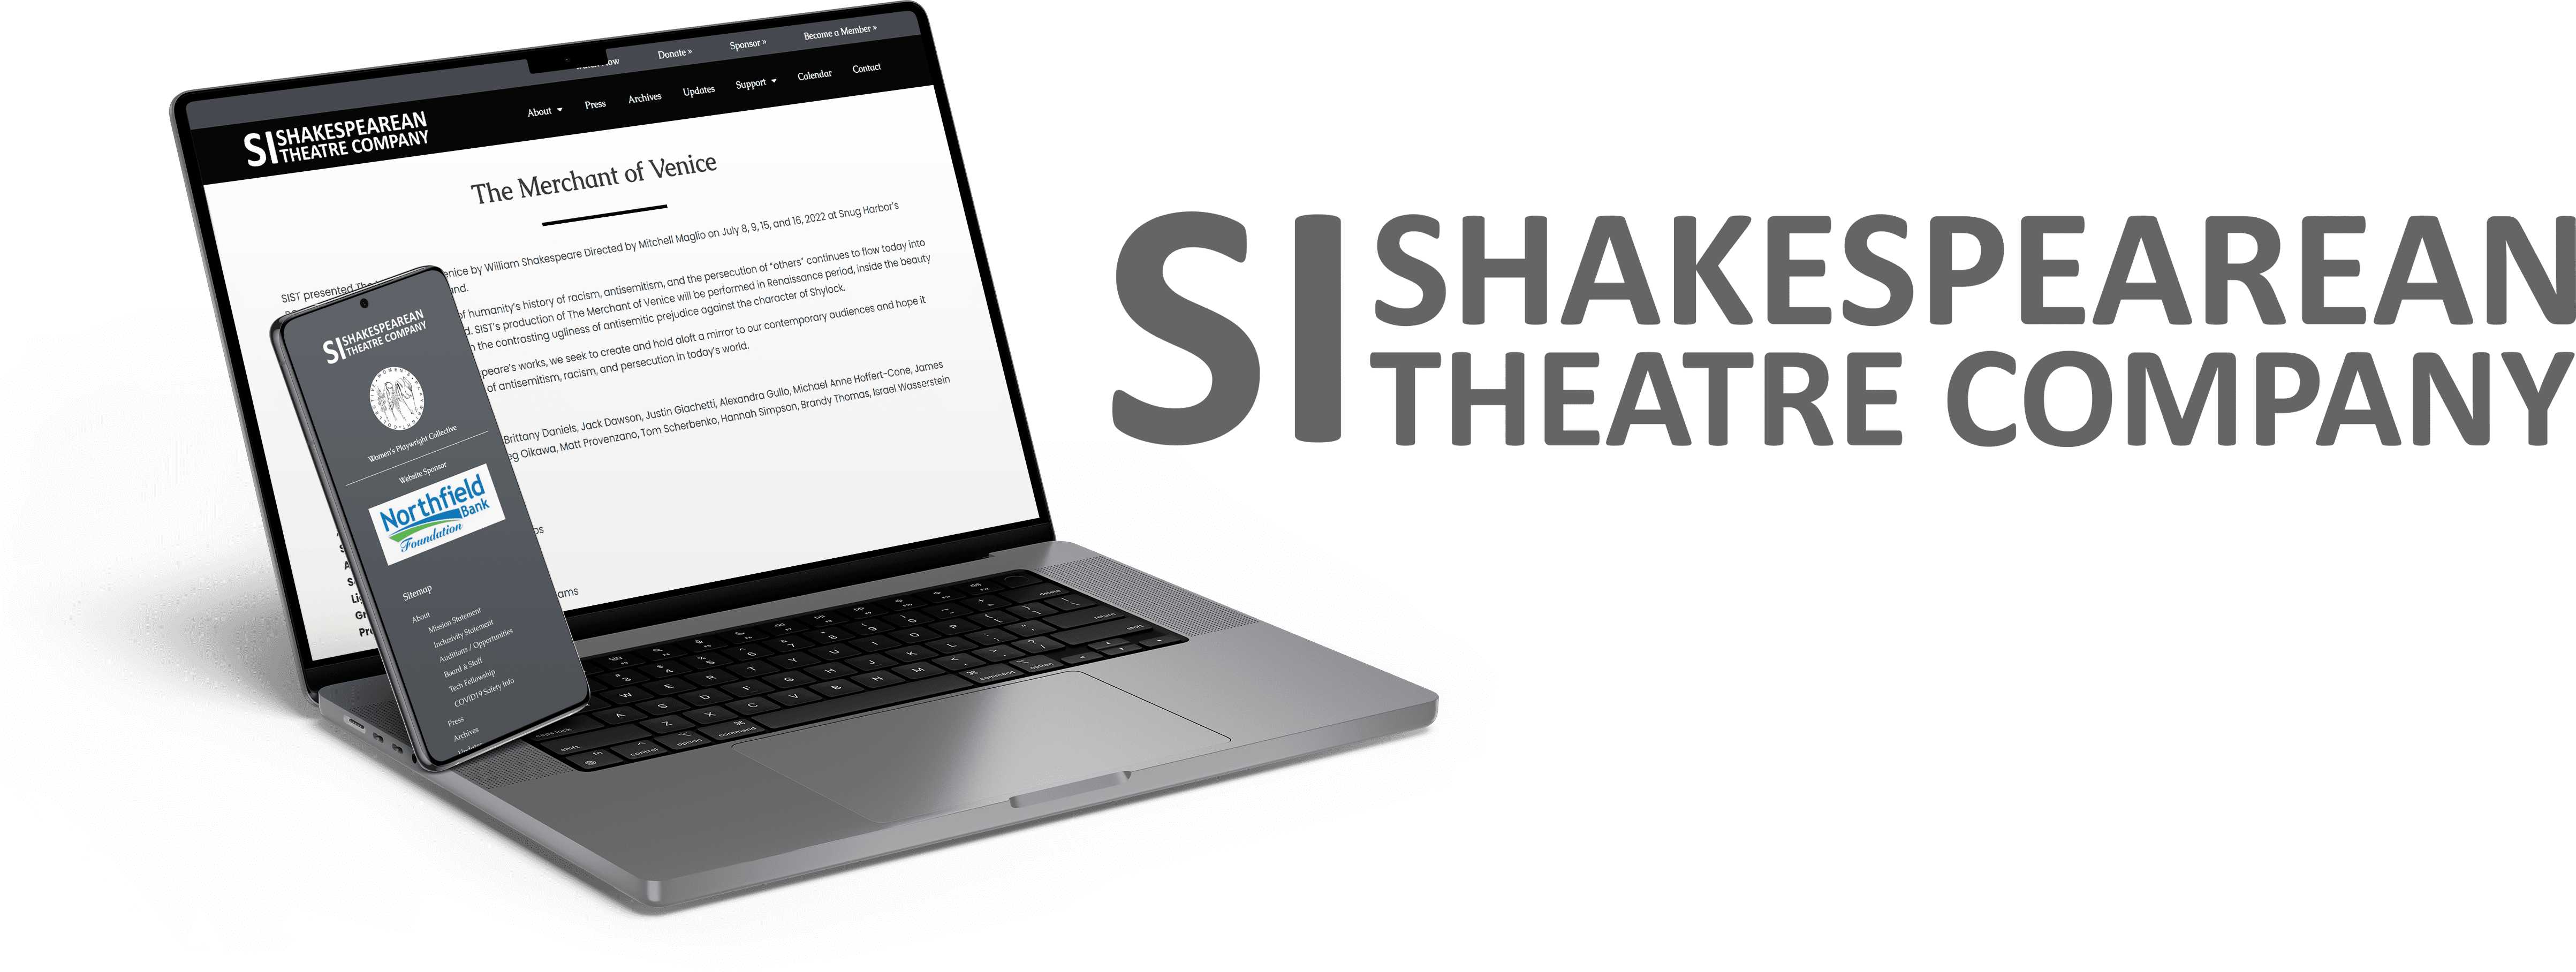 SI Shakespearean Theatre Company